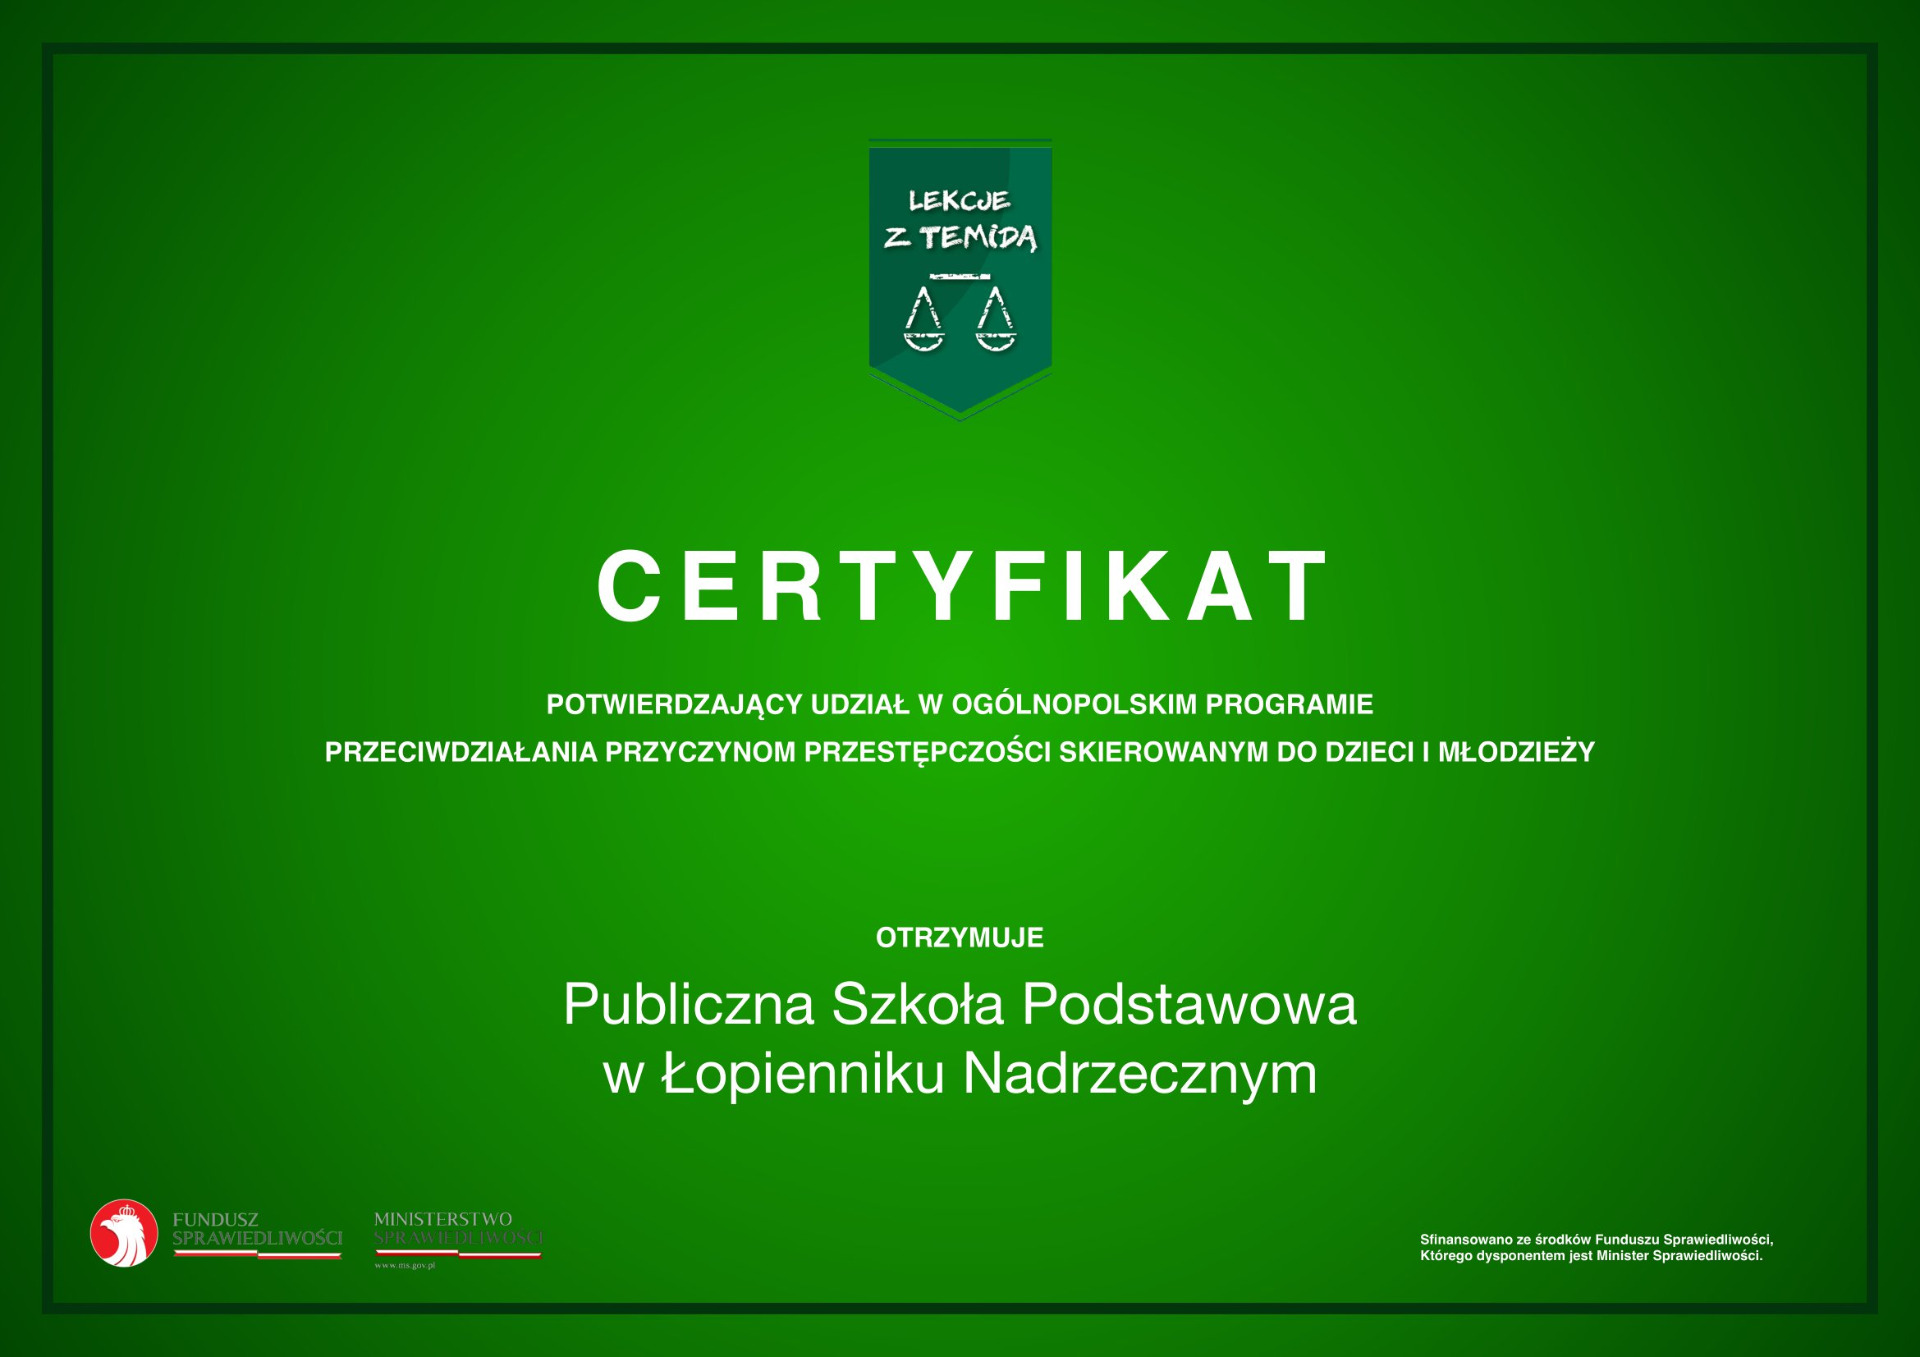 Certyfikat potwierdzający uczestnictwo szkoły w zajęciach w ramach programu "Lekcje z Temidą" - Obrazek 1